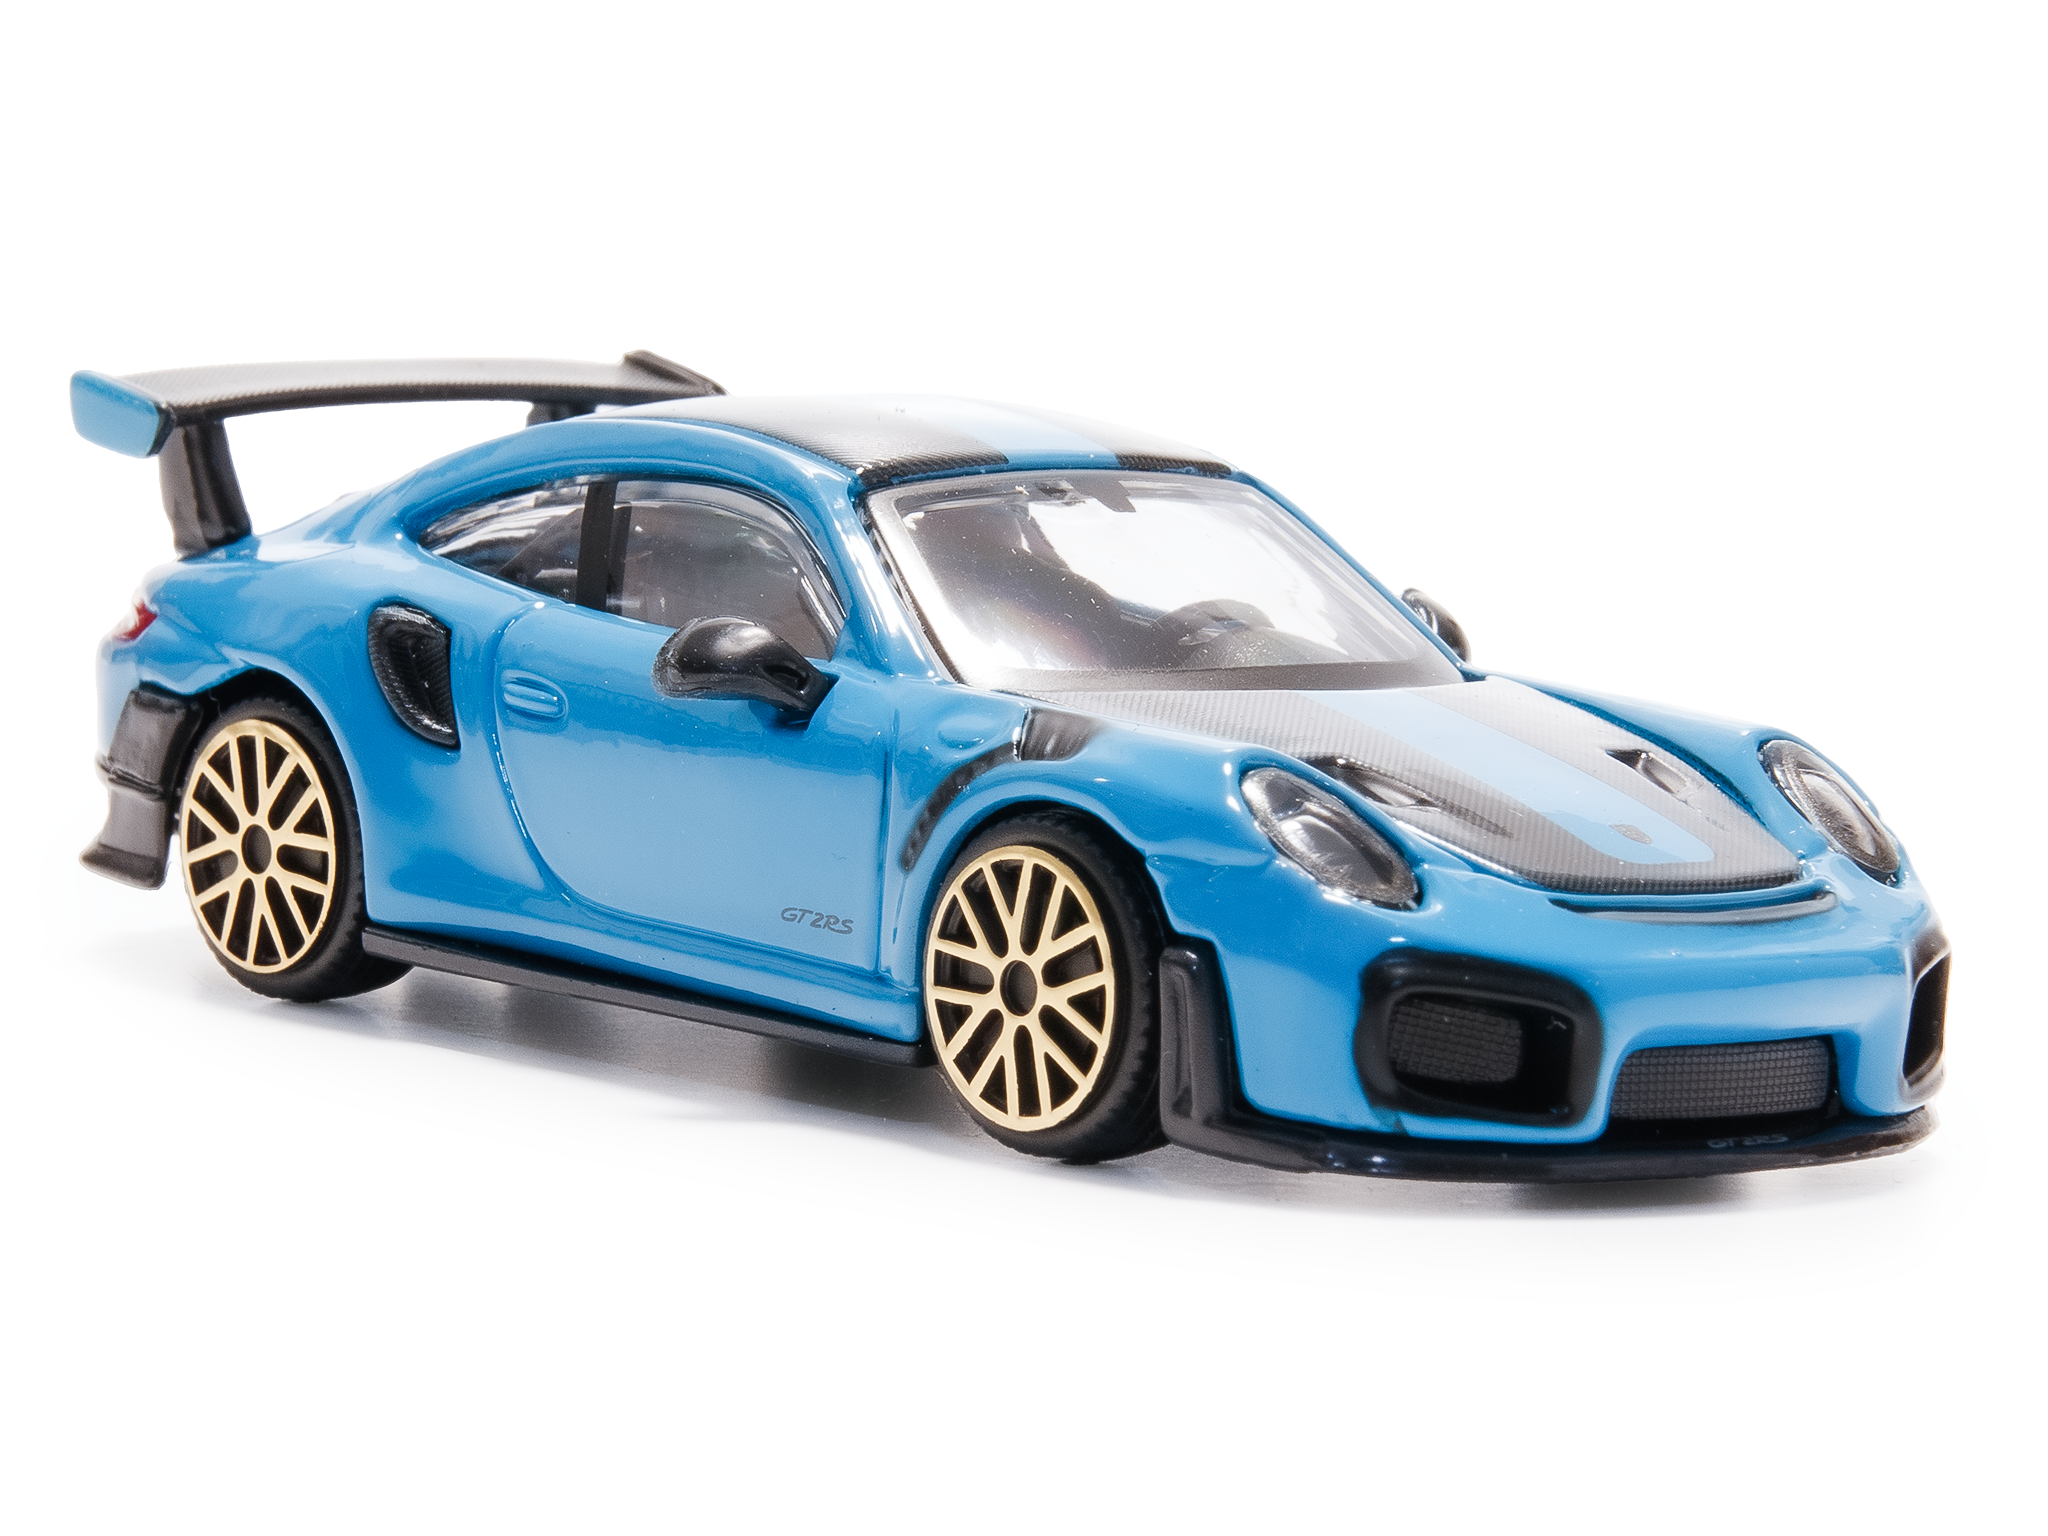 Porsche 911 GT2 RS blue - 1:43 Scale Diecast Toy Car